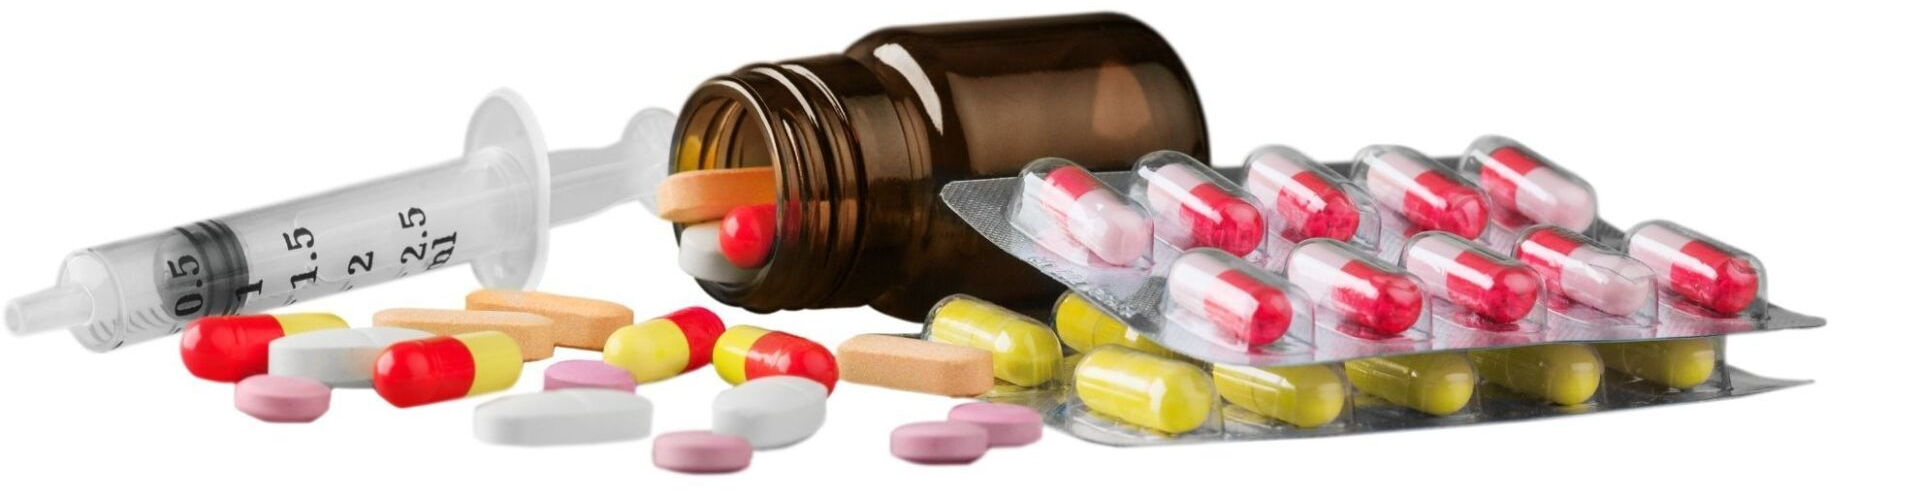 prescription pill addiction